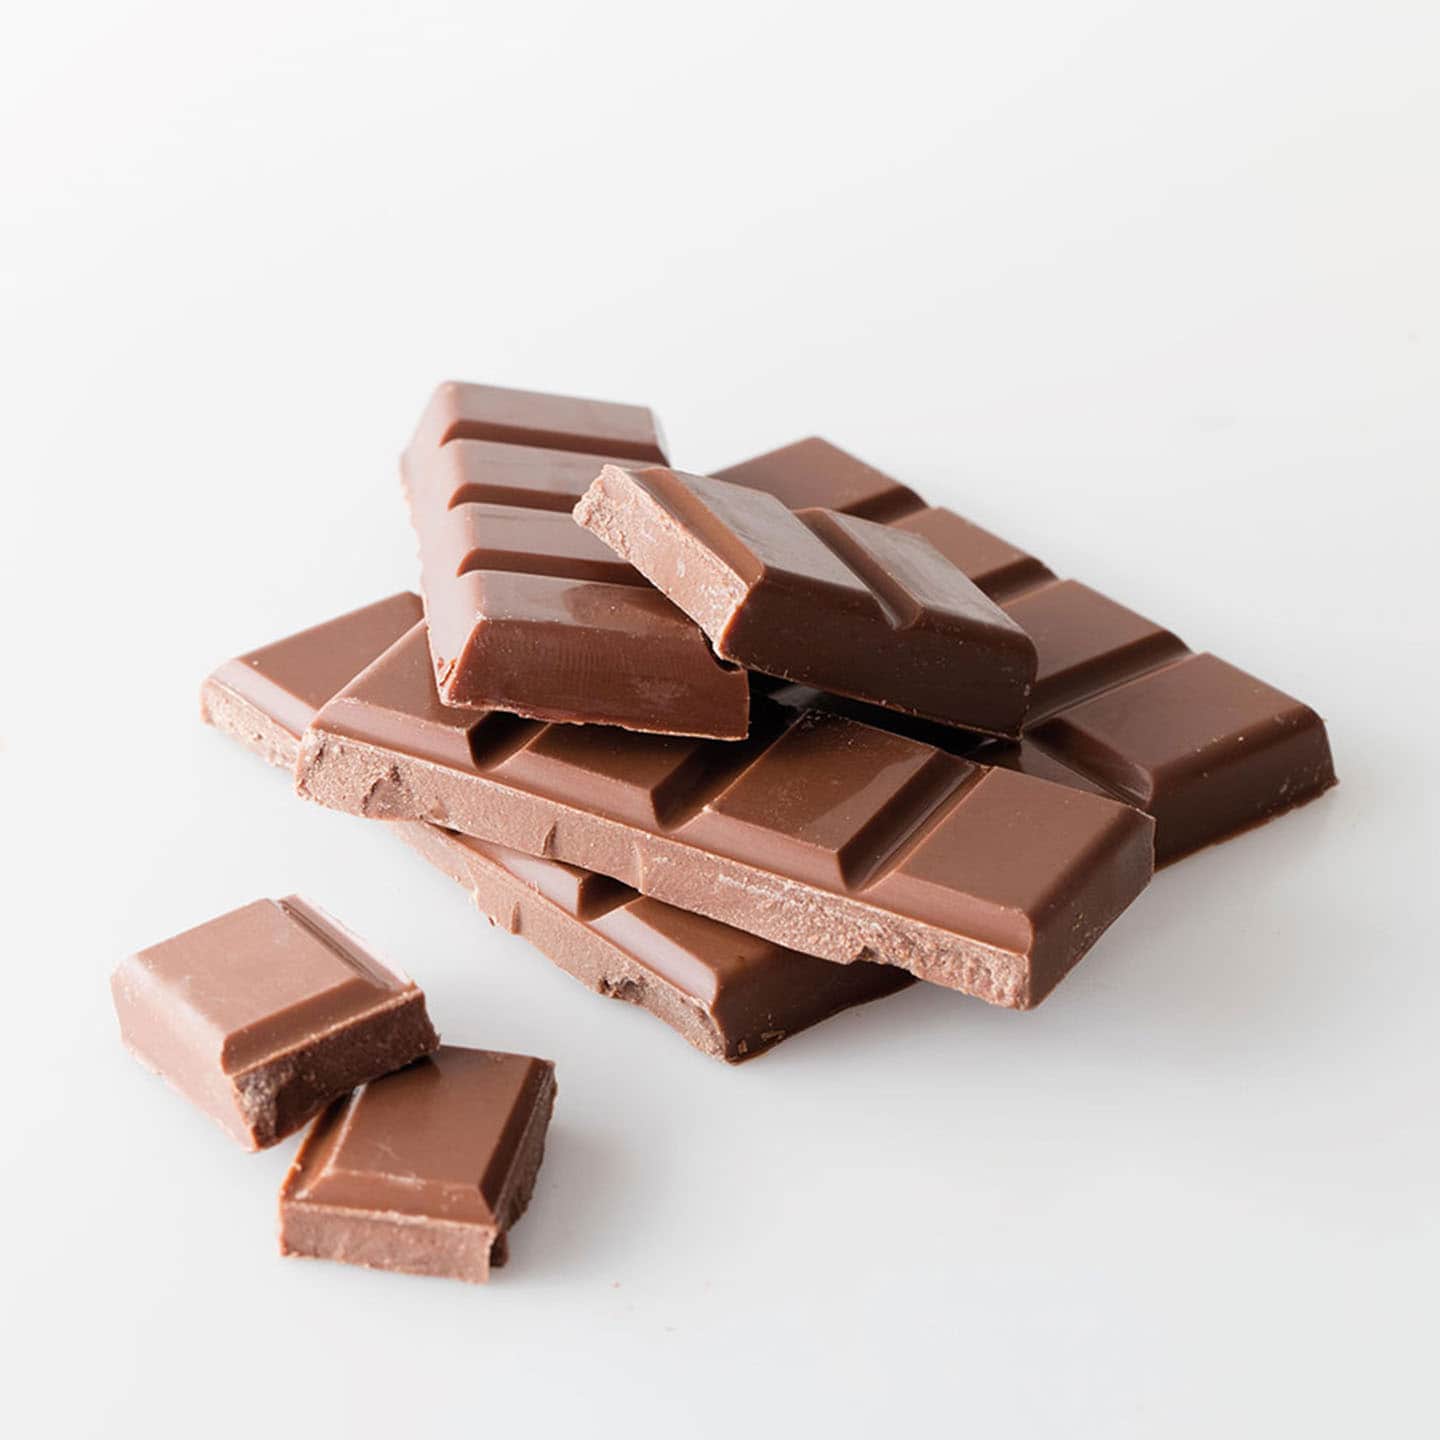 Tablette Chocolat Lait 46% origine République Dominicaine 100g